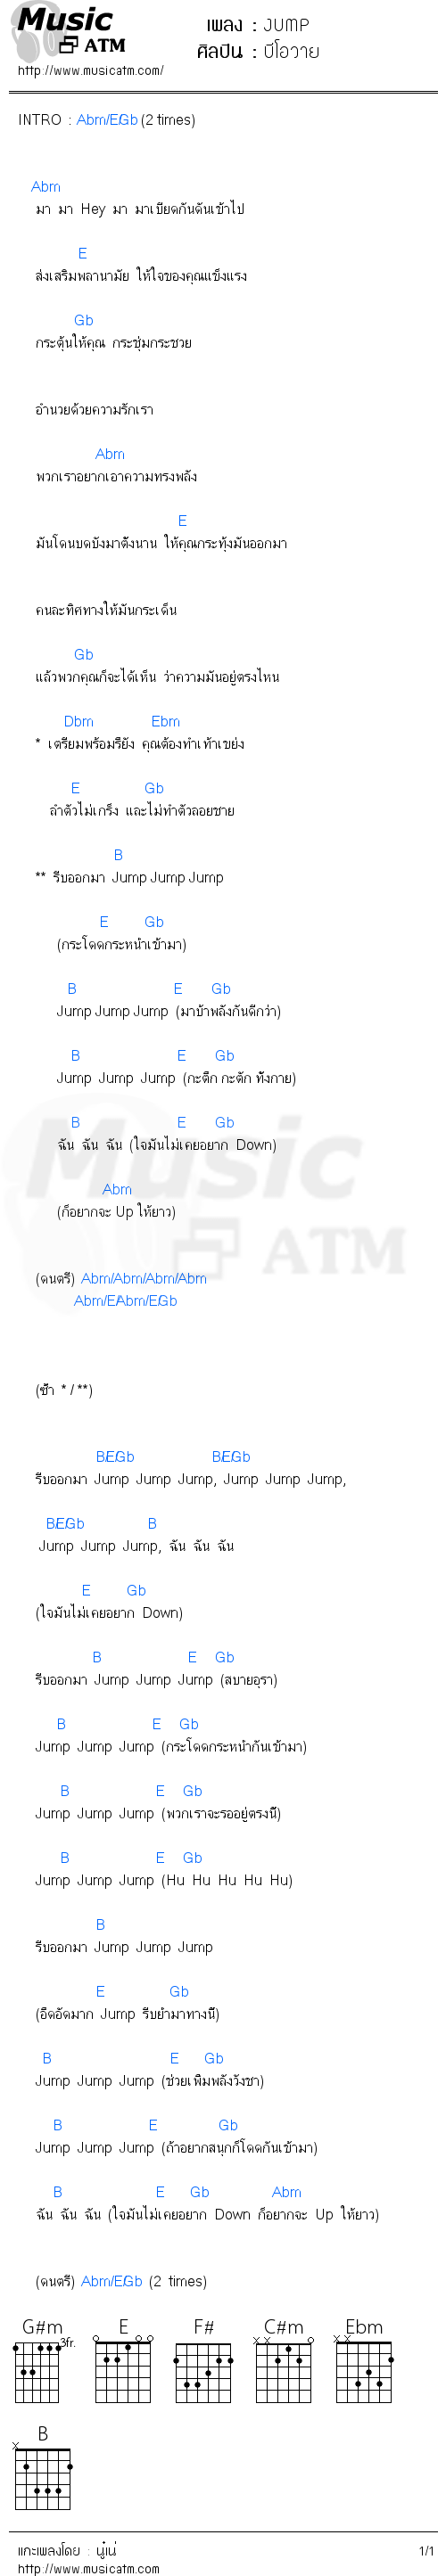 คอร์ดเพลง JUMP - บีโอวาย | คอร์ดเพลงใหม่